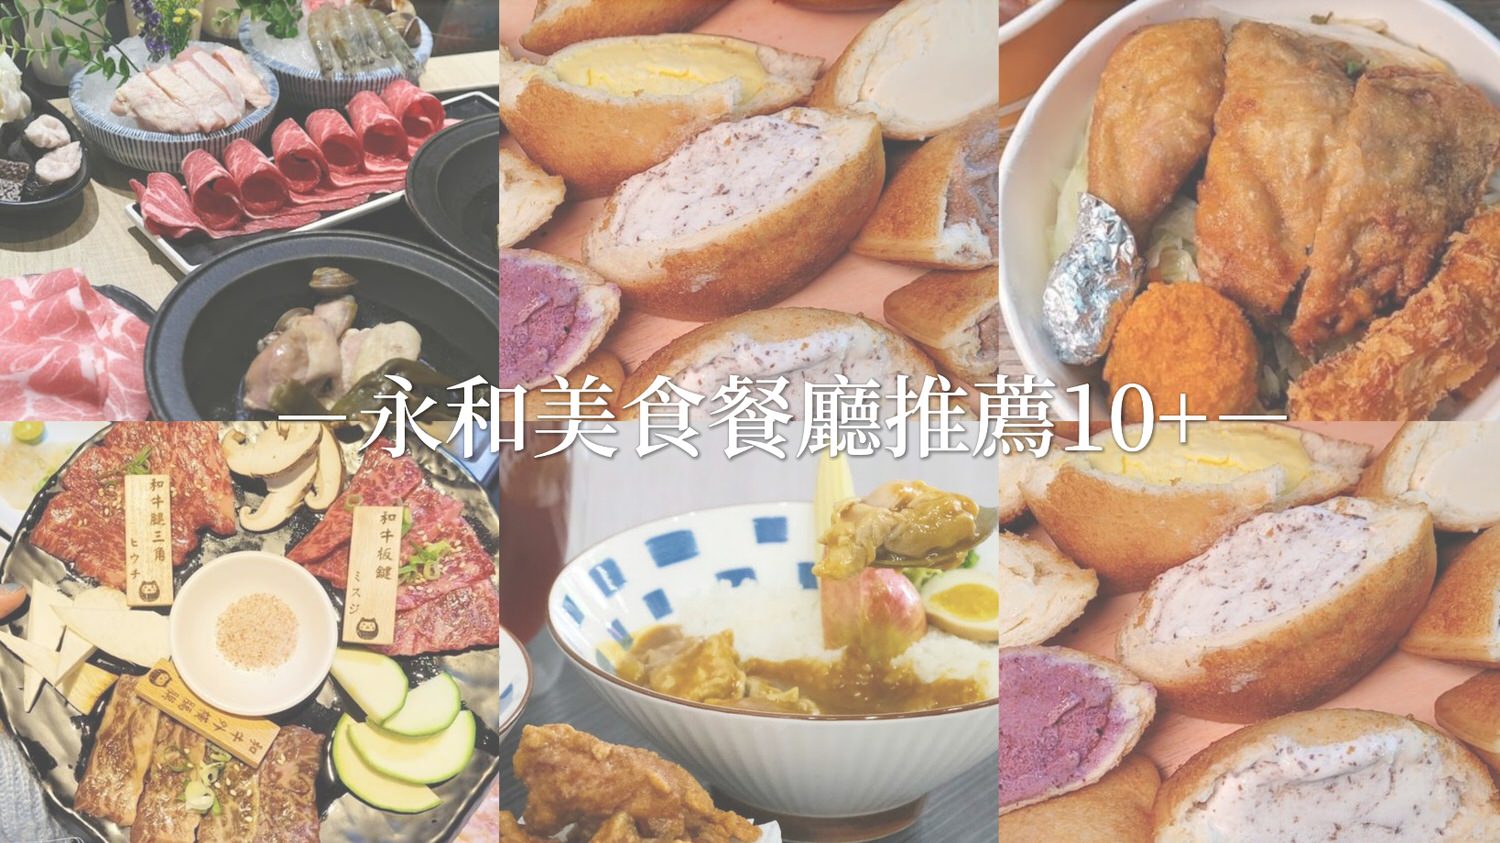 永和美食餐廳10+推薦 日式/火鍋/小吃/便當/餐酒館